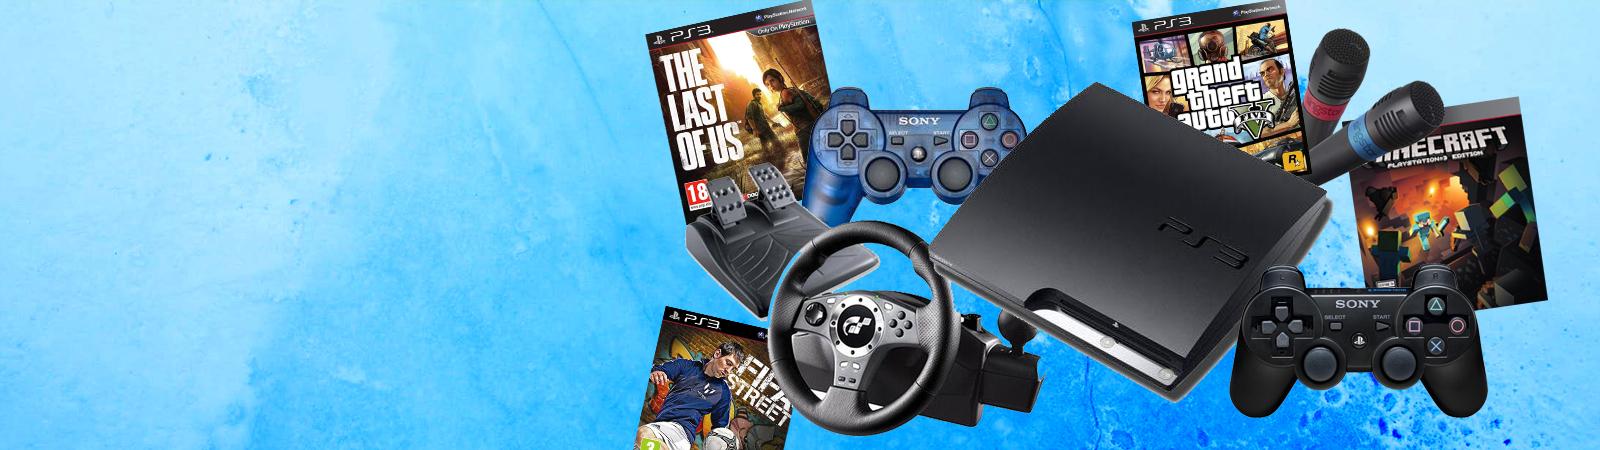 kort Detecteerbaar Vervoer PS3 consoles, PlayStation 3 games & accessoires kopen bij GooHoo!